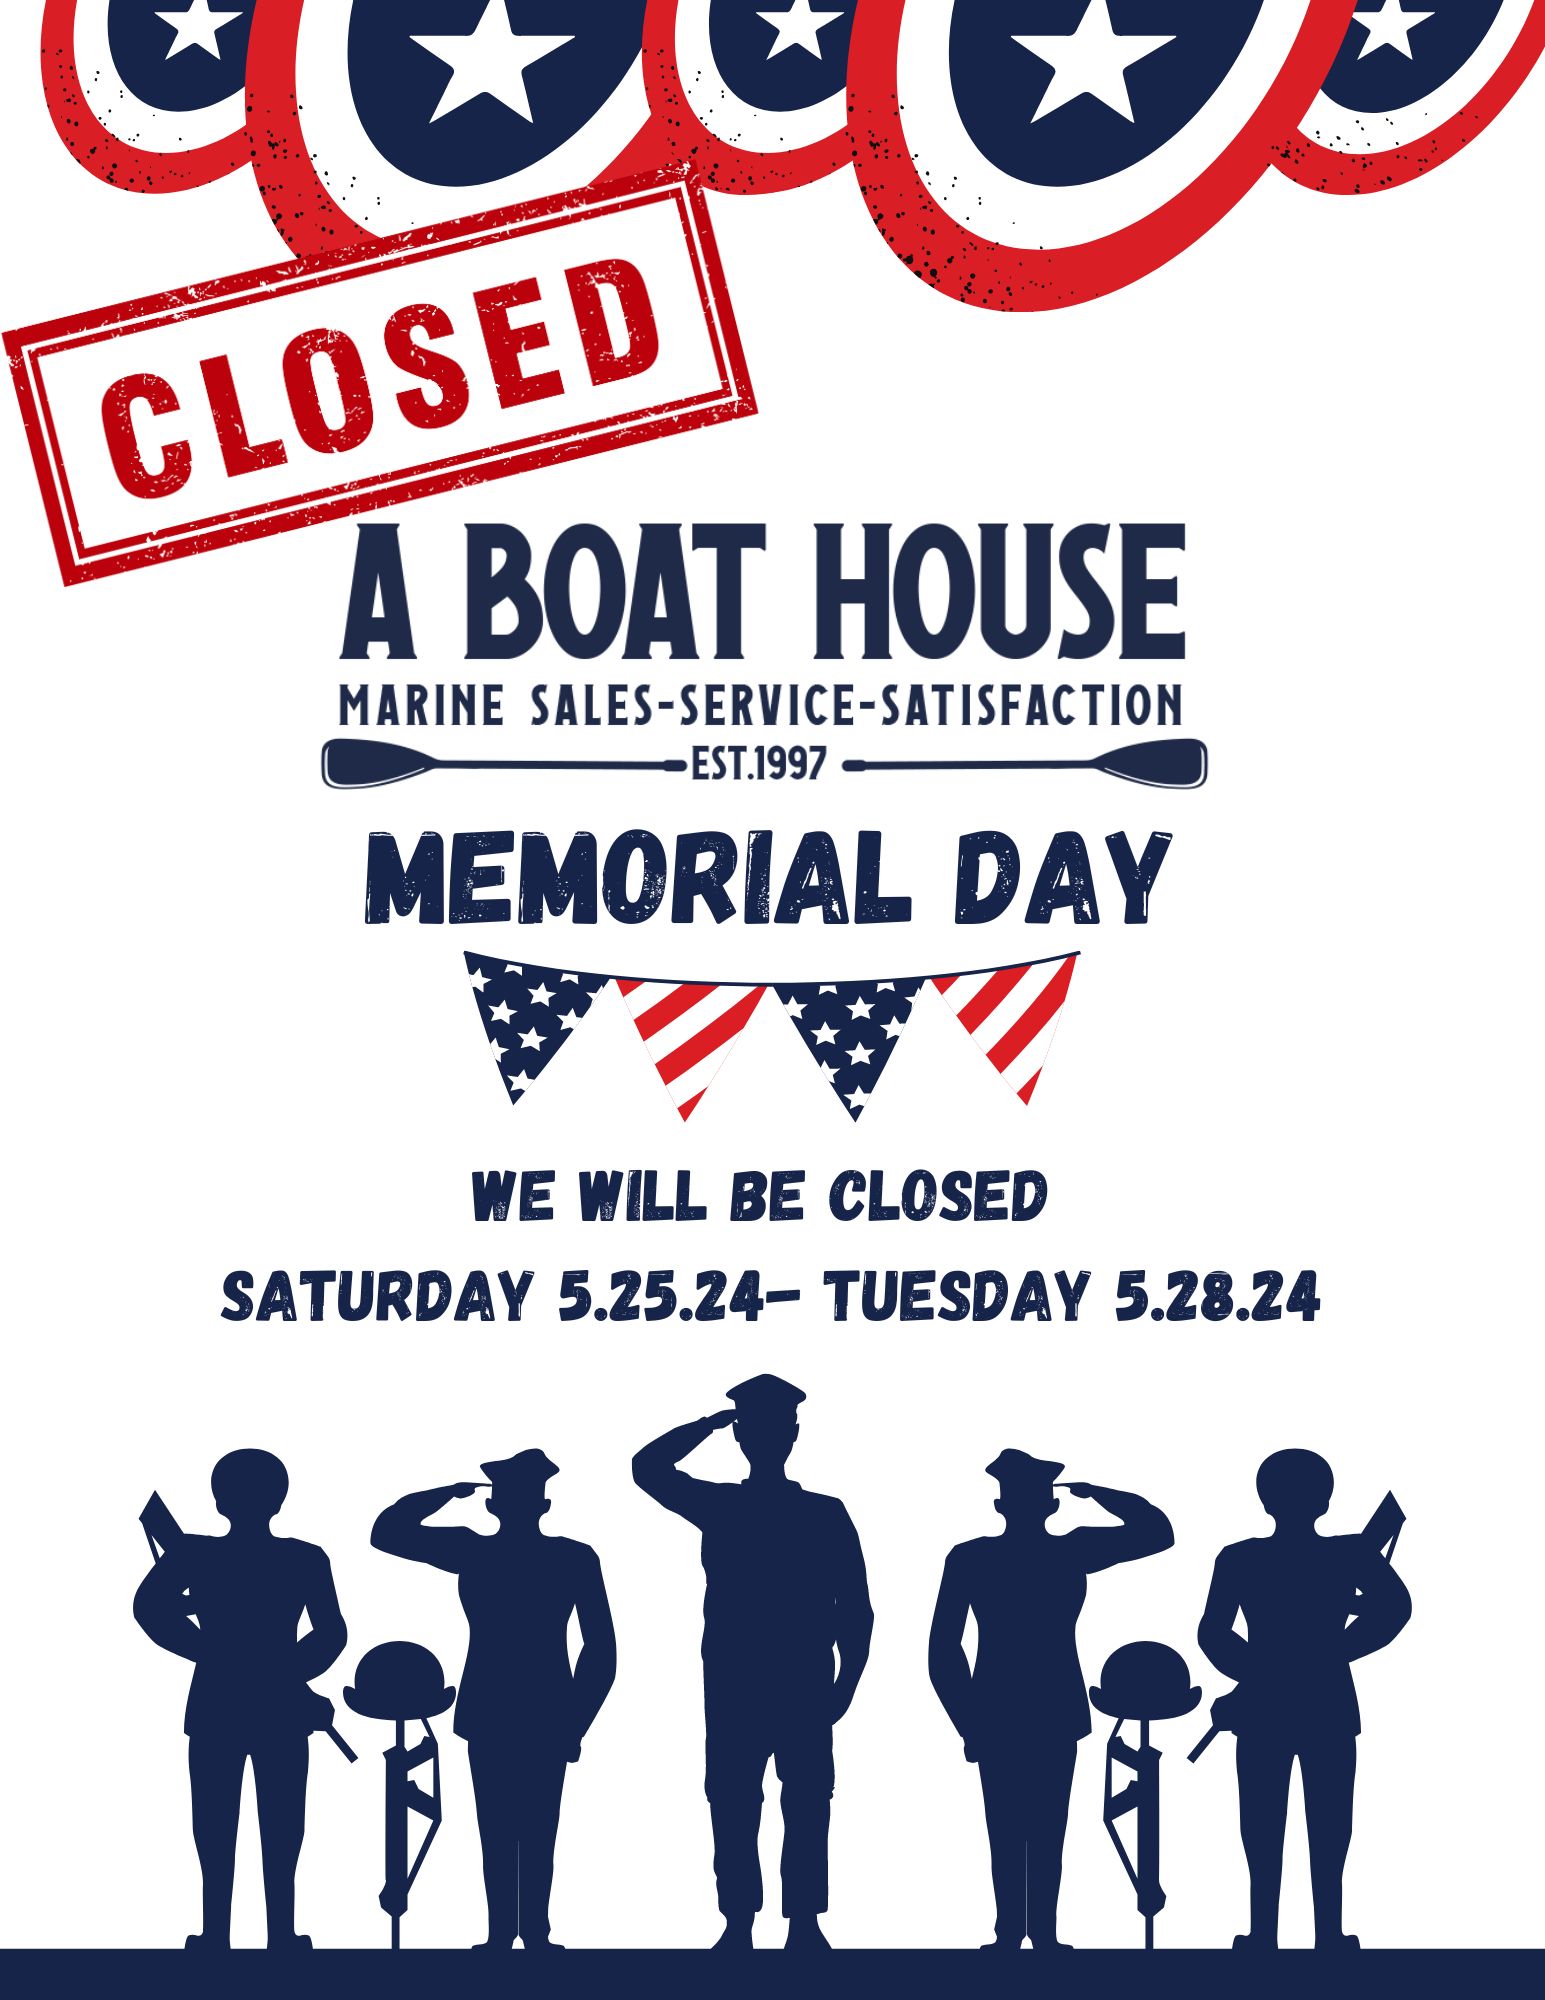 Closed memorial day - May 24 - 27